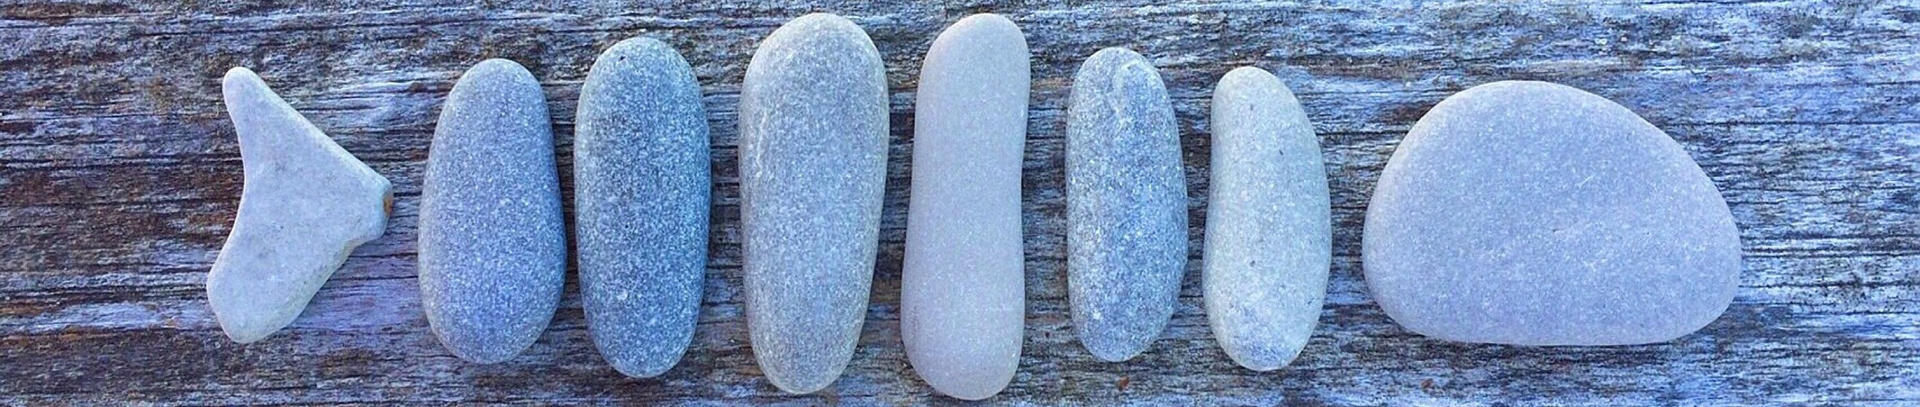 不揃いの石も並べ方次第で意味のある形に